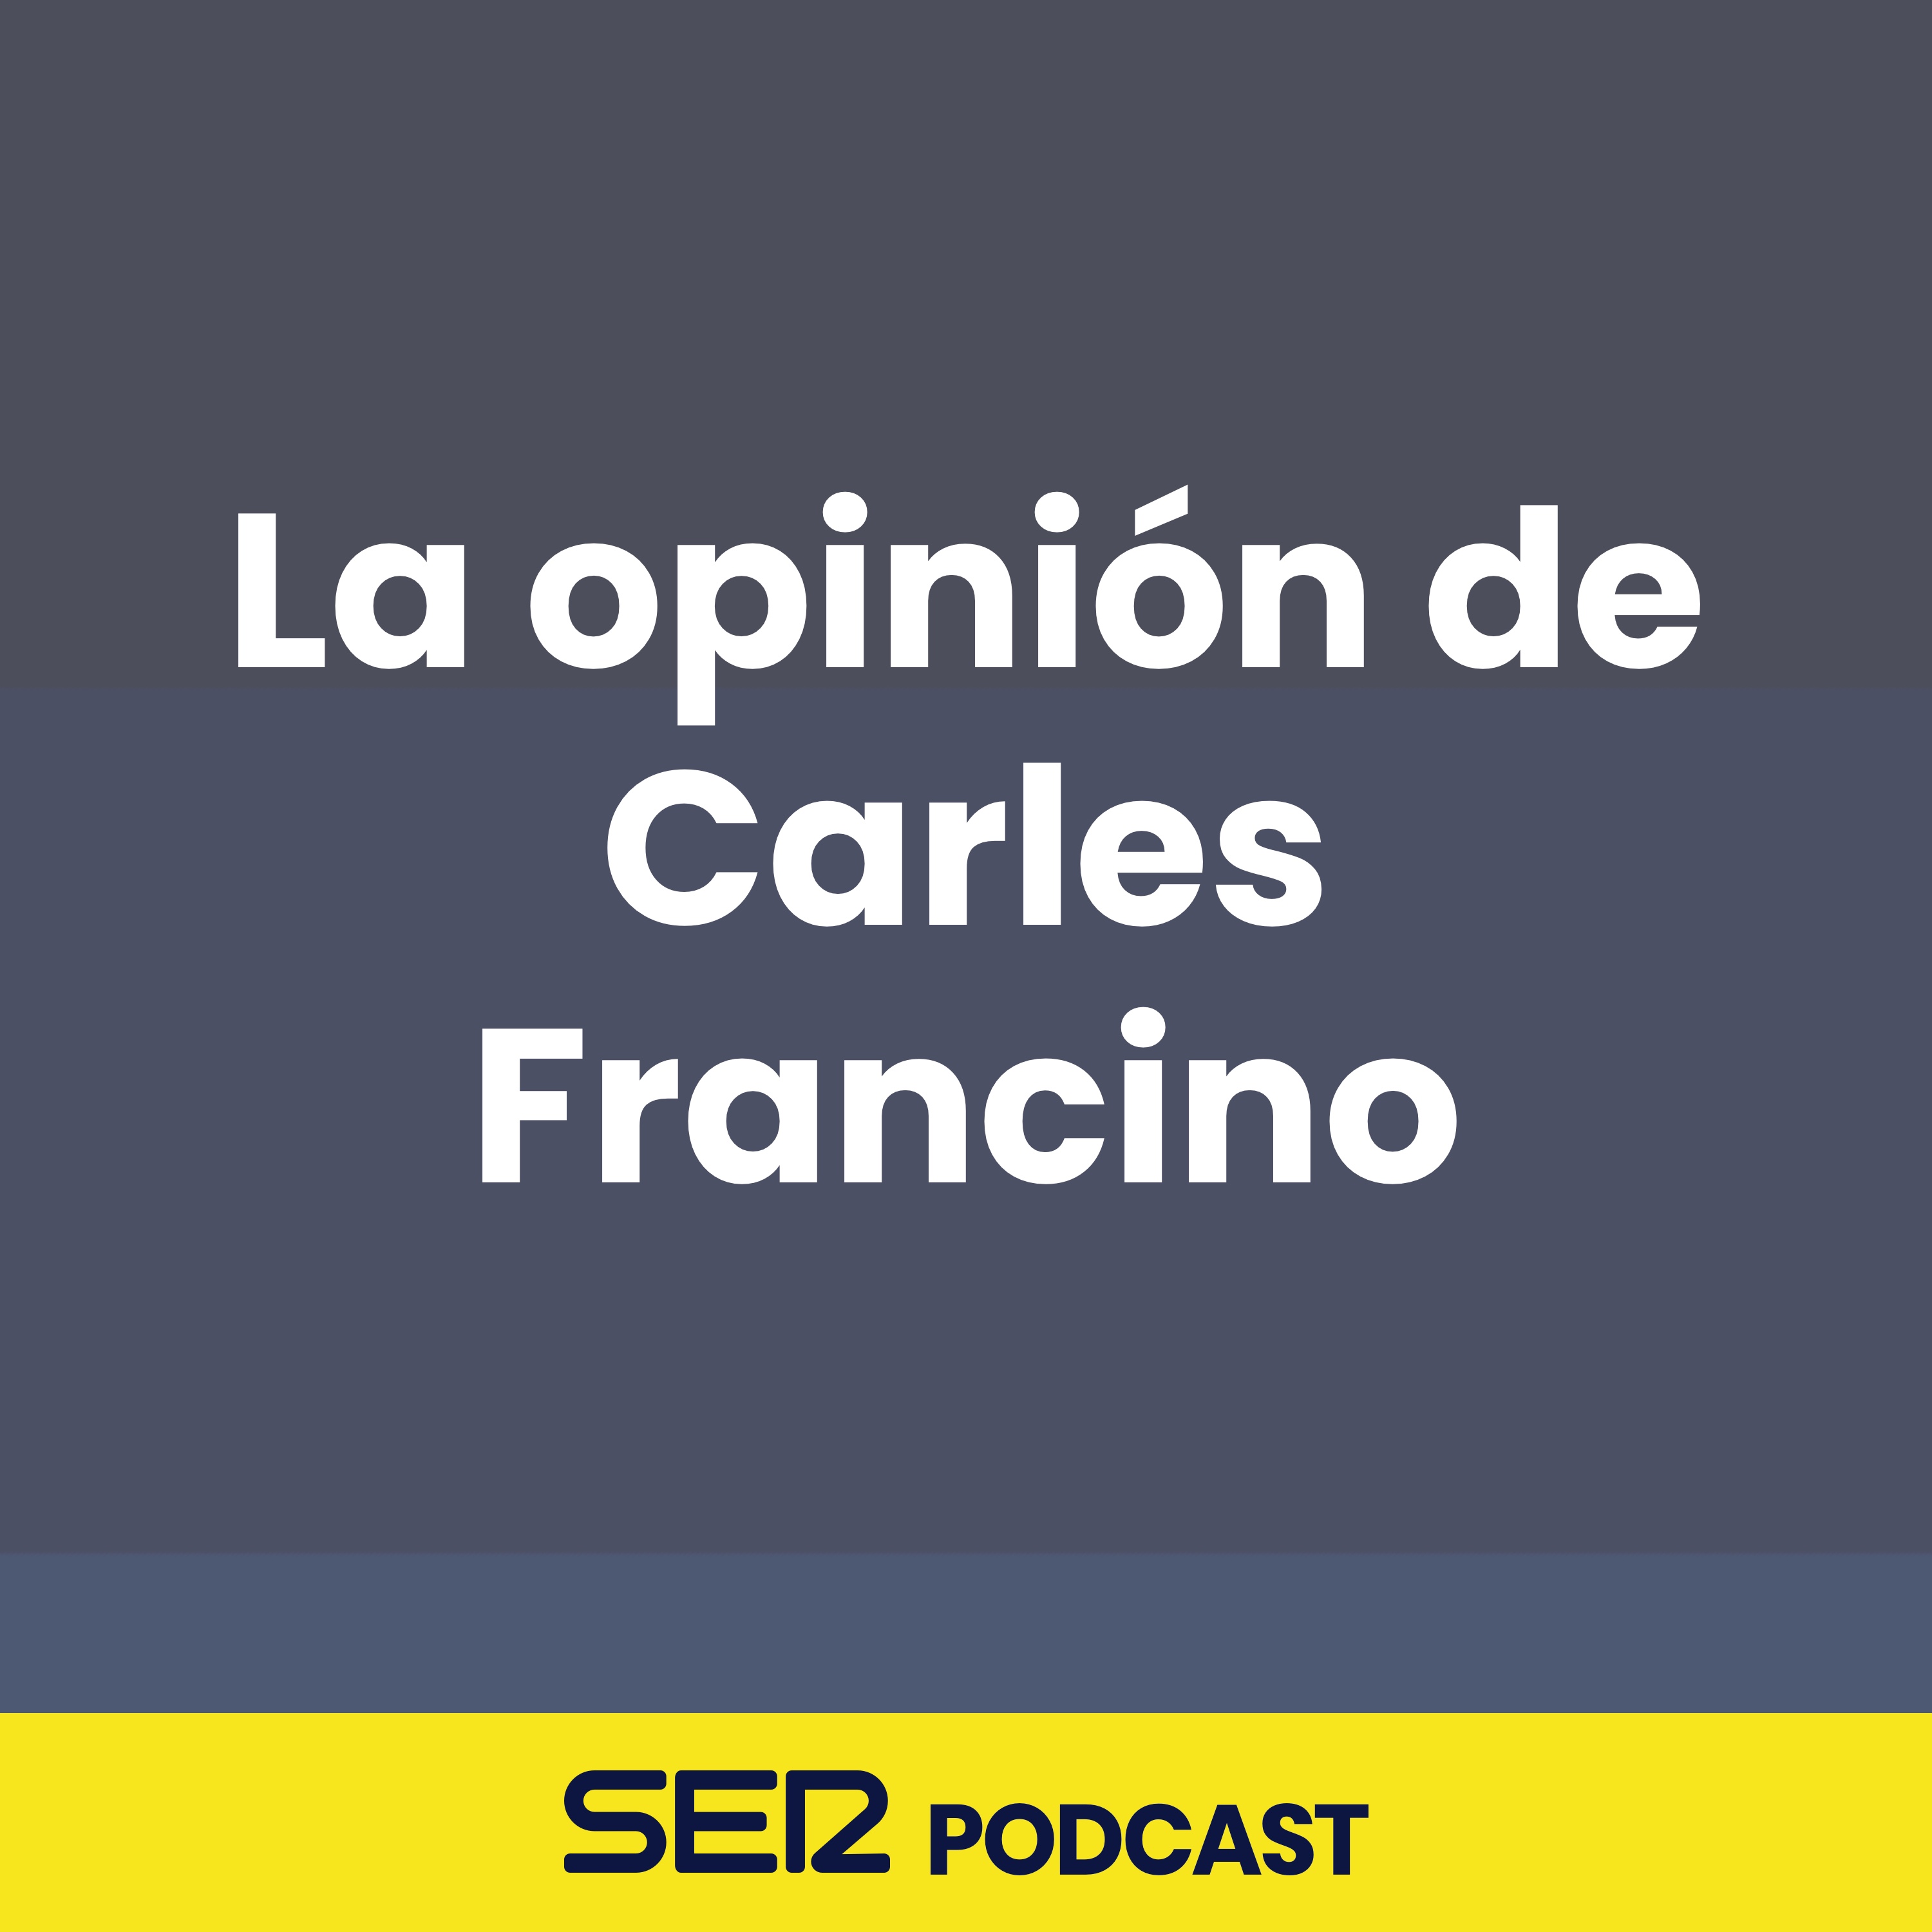 La opinión de Carles Francino